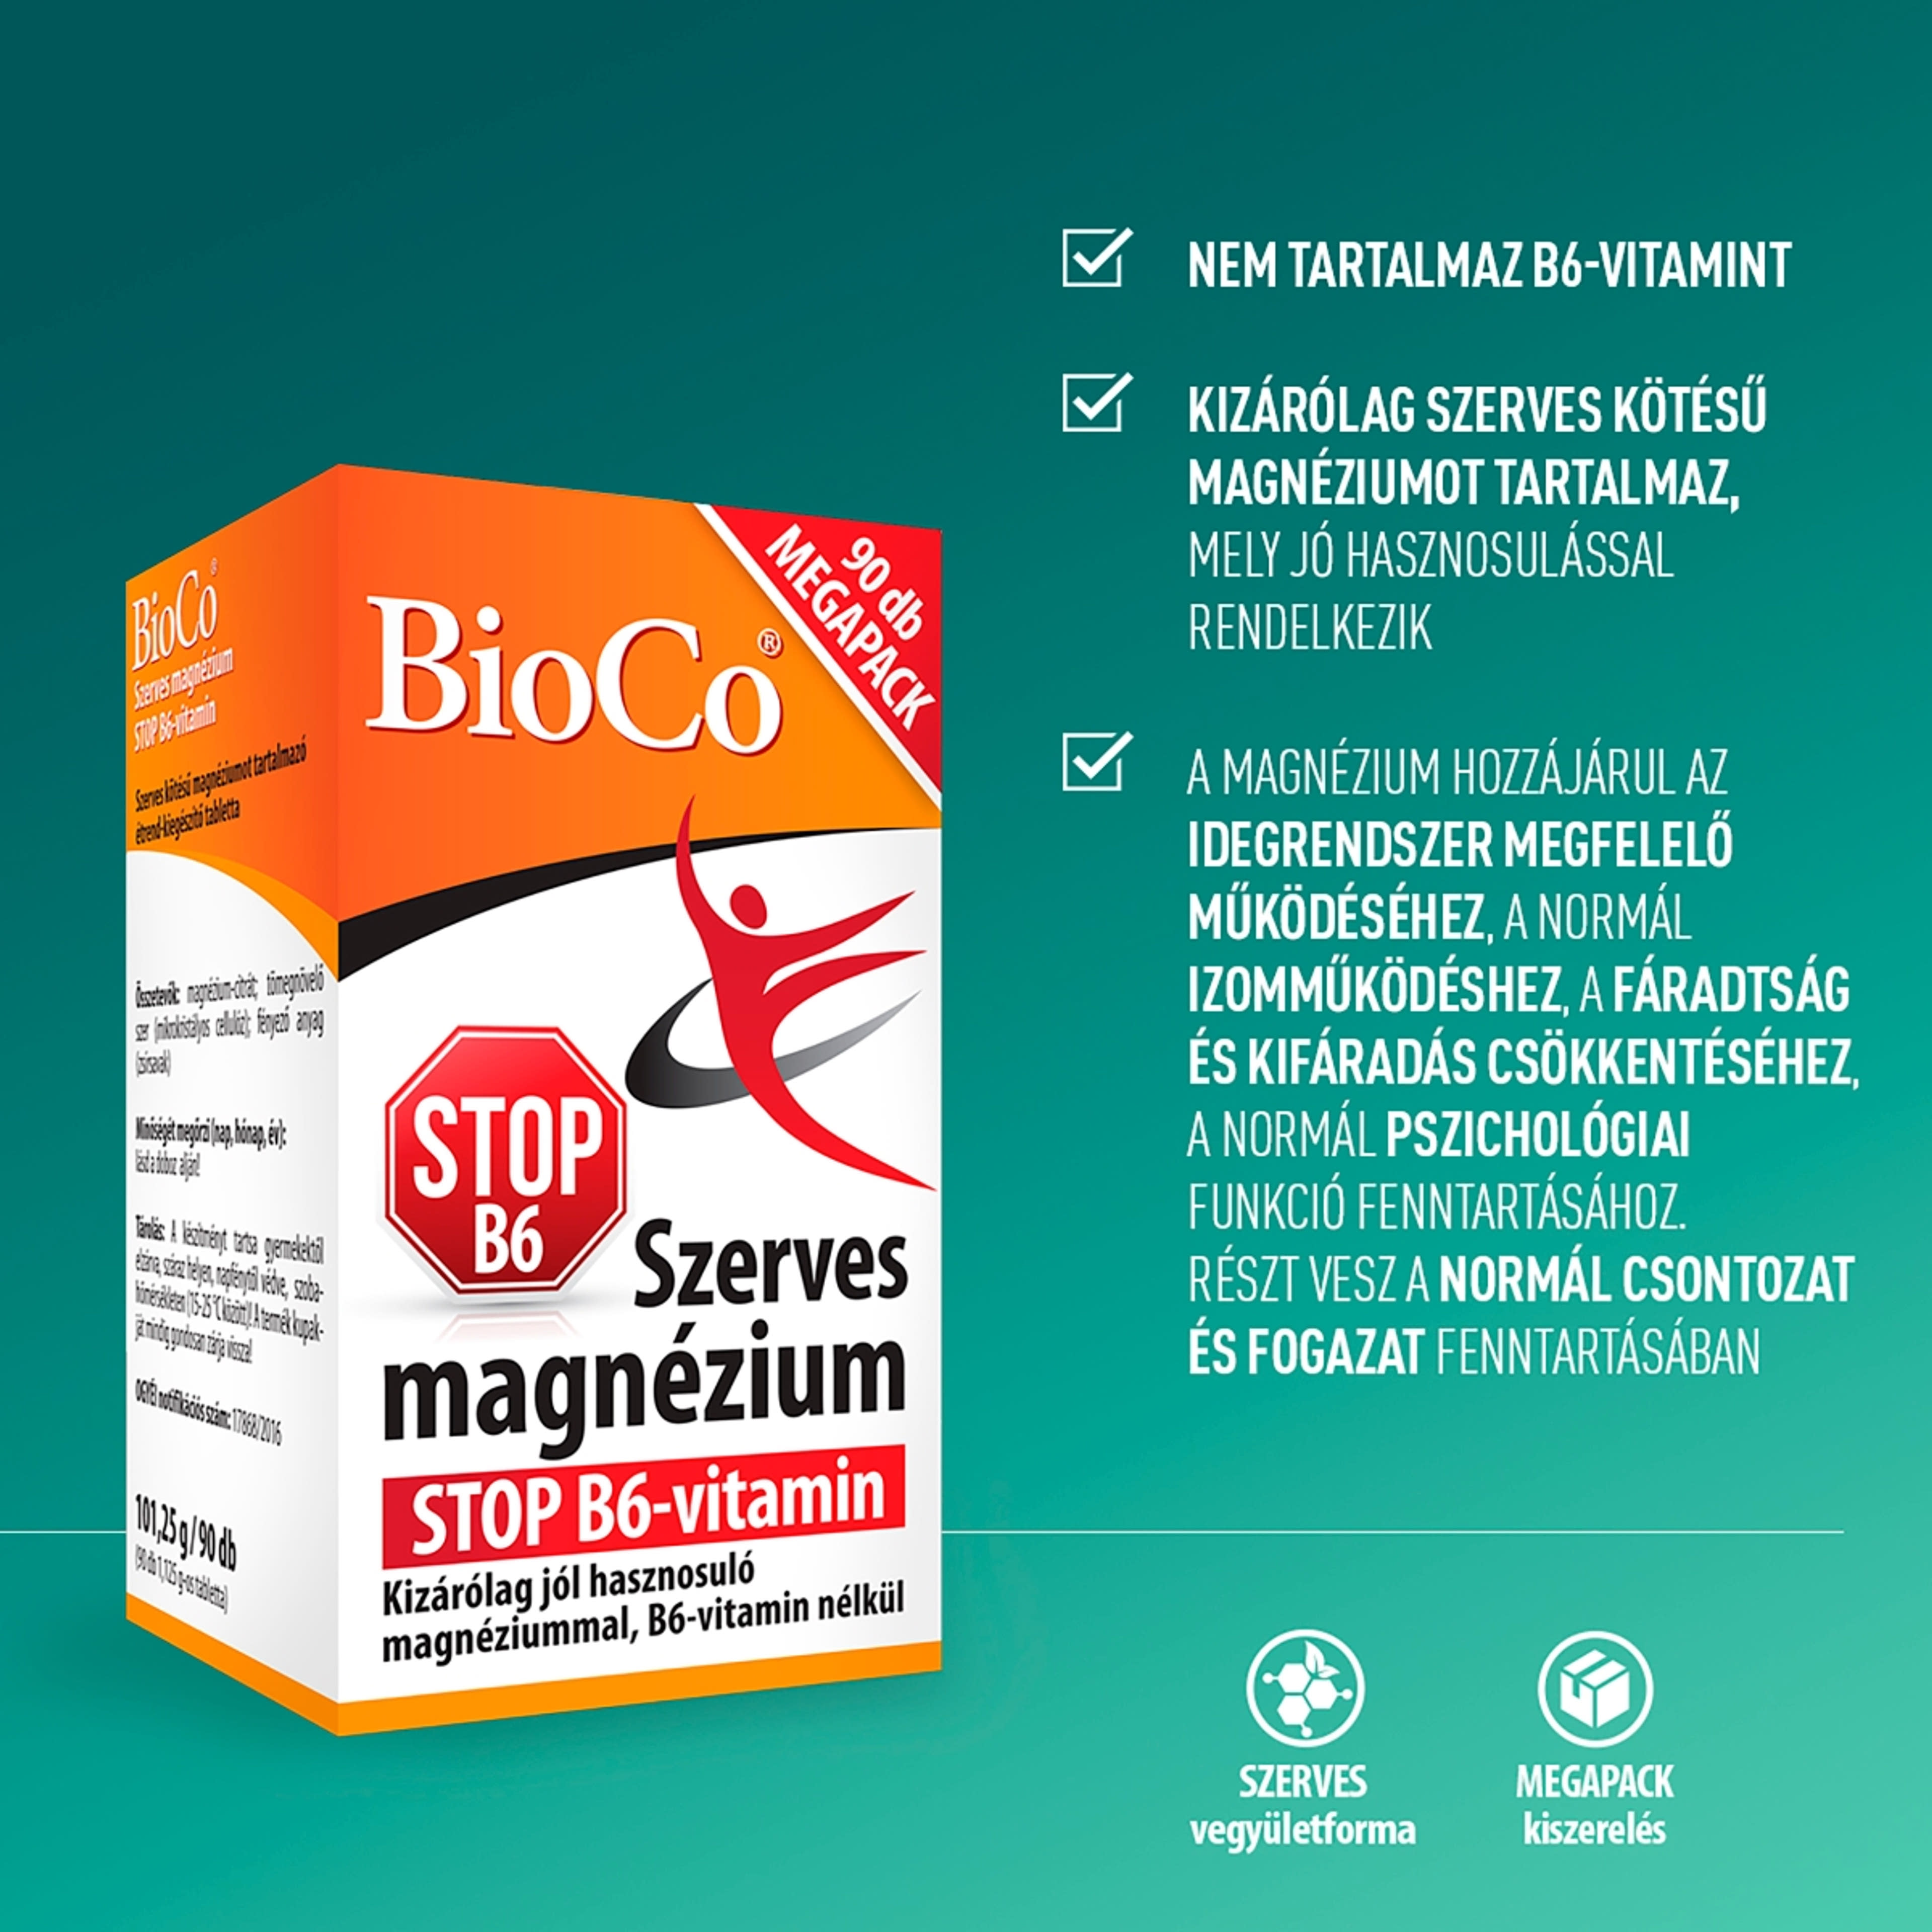 Bioco szerves magnézium stop B6 vitamin tabletta - 90 db-3